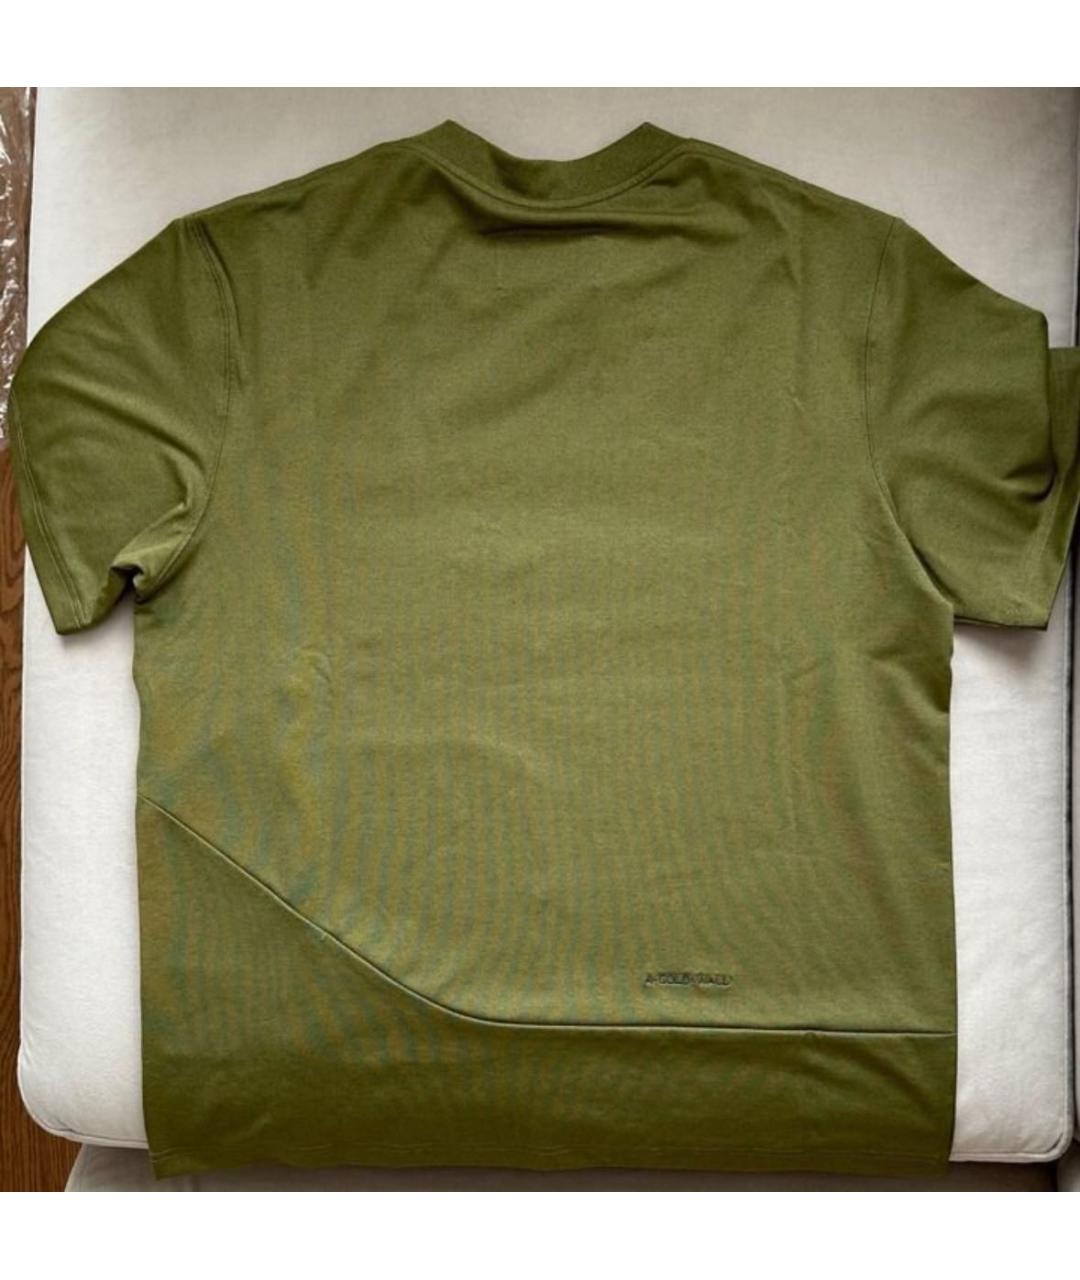 A-COLD-WALL* Хаки синтетическая футболка, фото 2